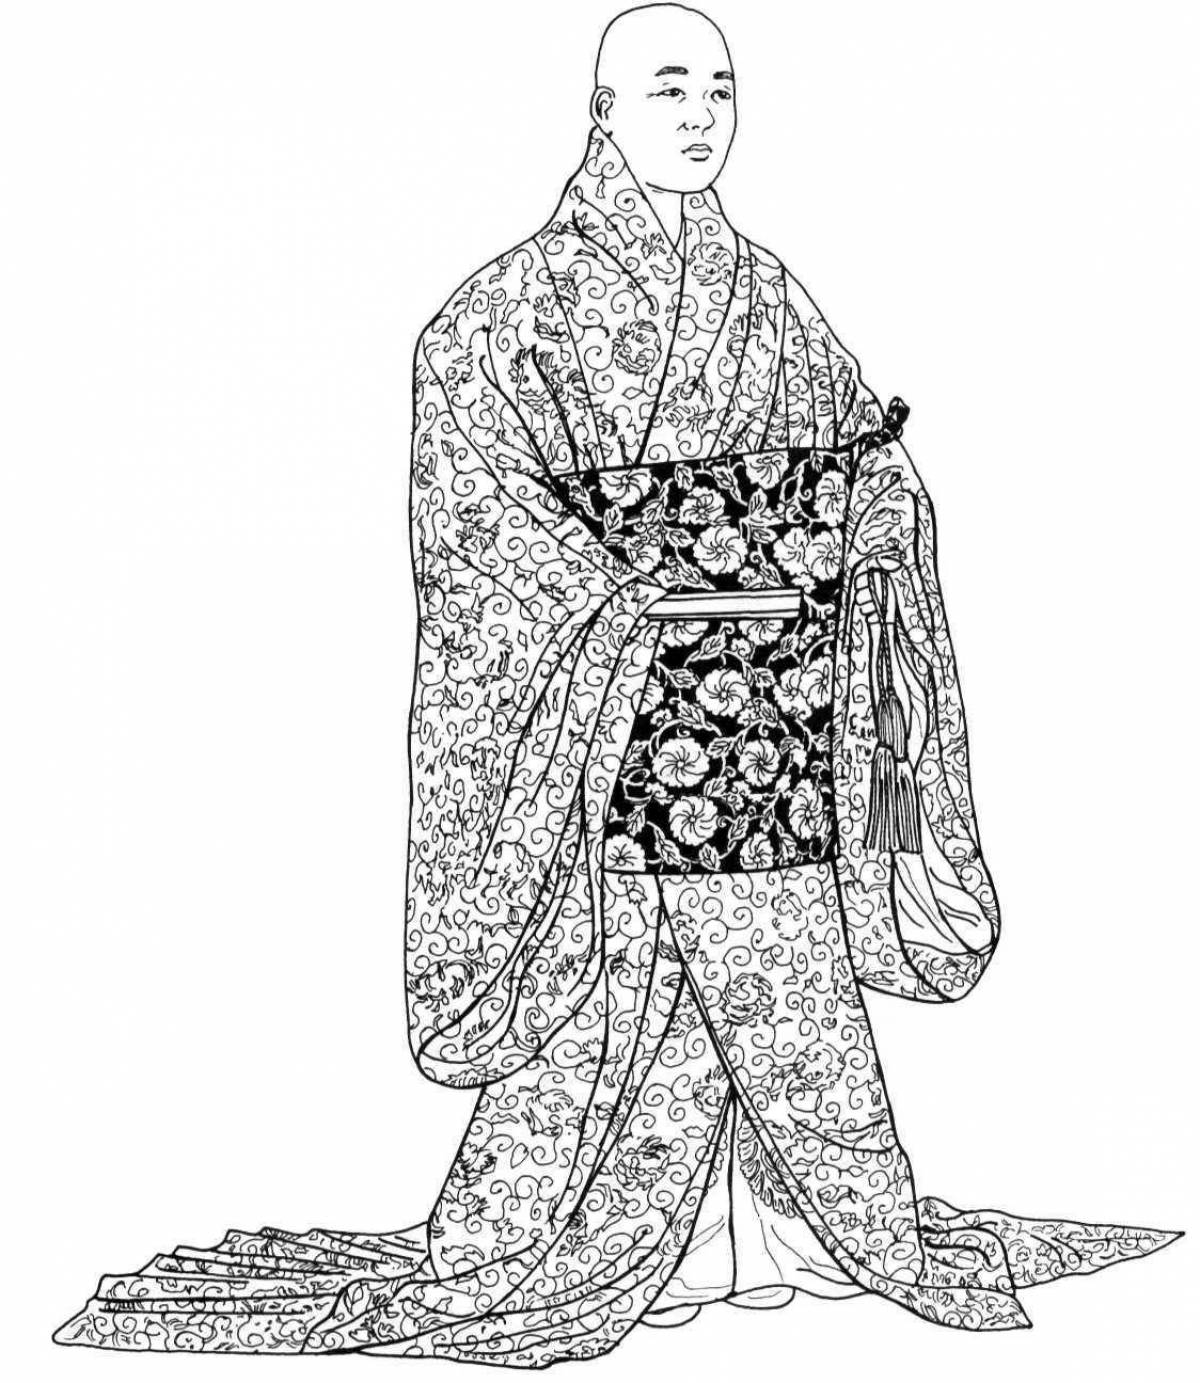 Coloring page of wild kimono women